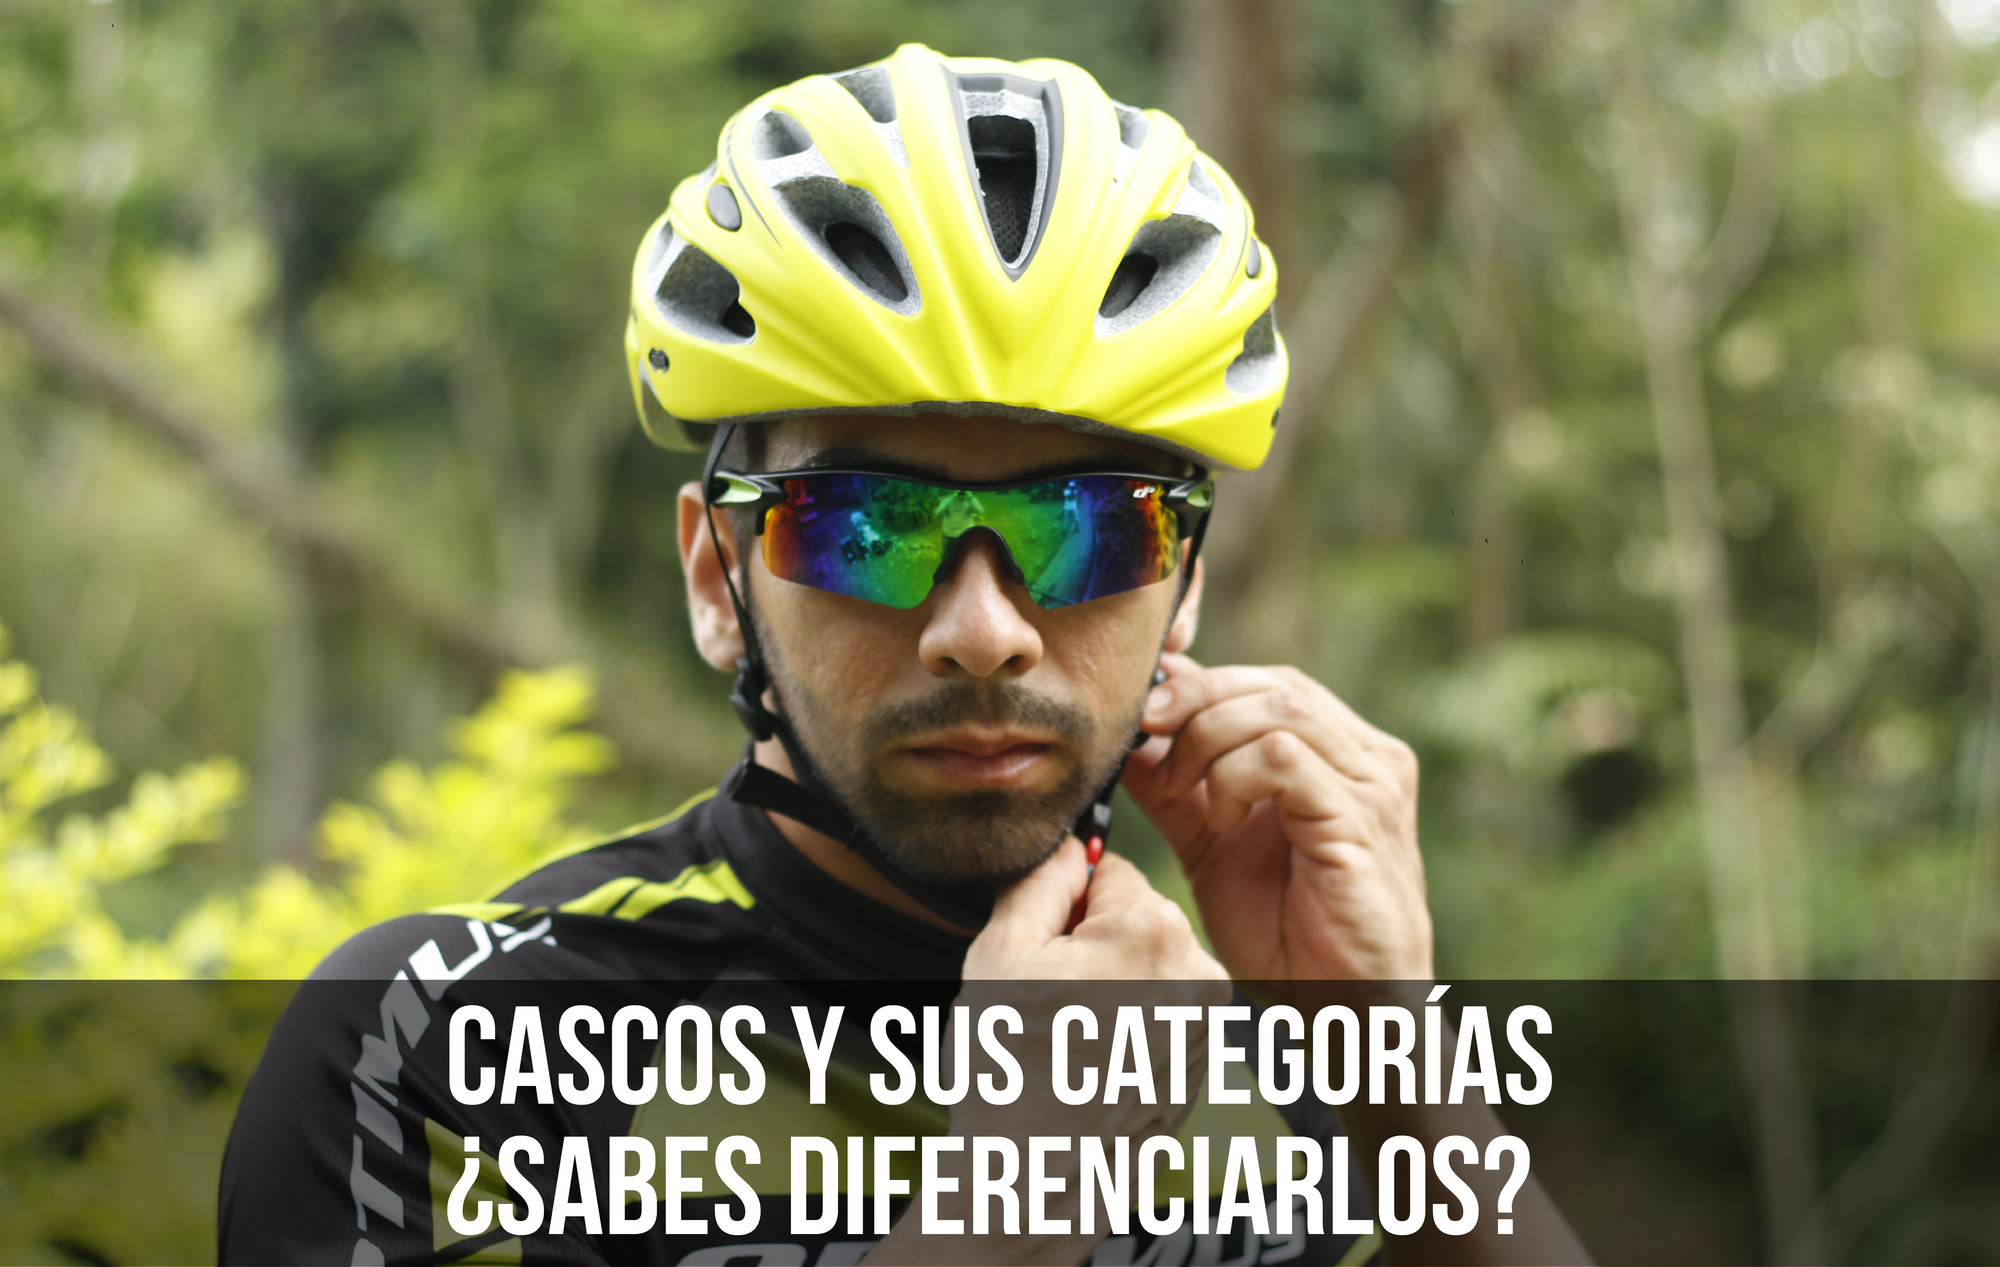 CASCOS Y SUS CATEGORIAS ¿SABES DIFERENCIARLOS?